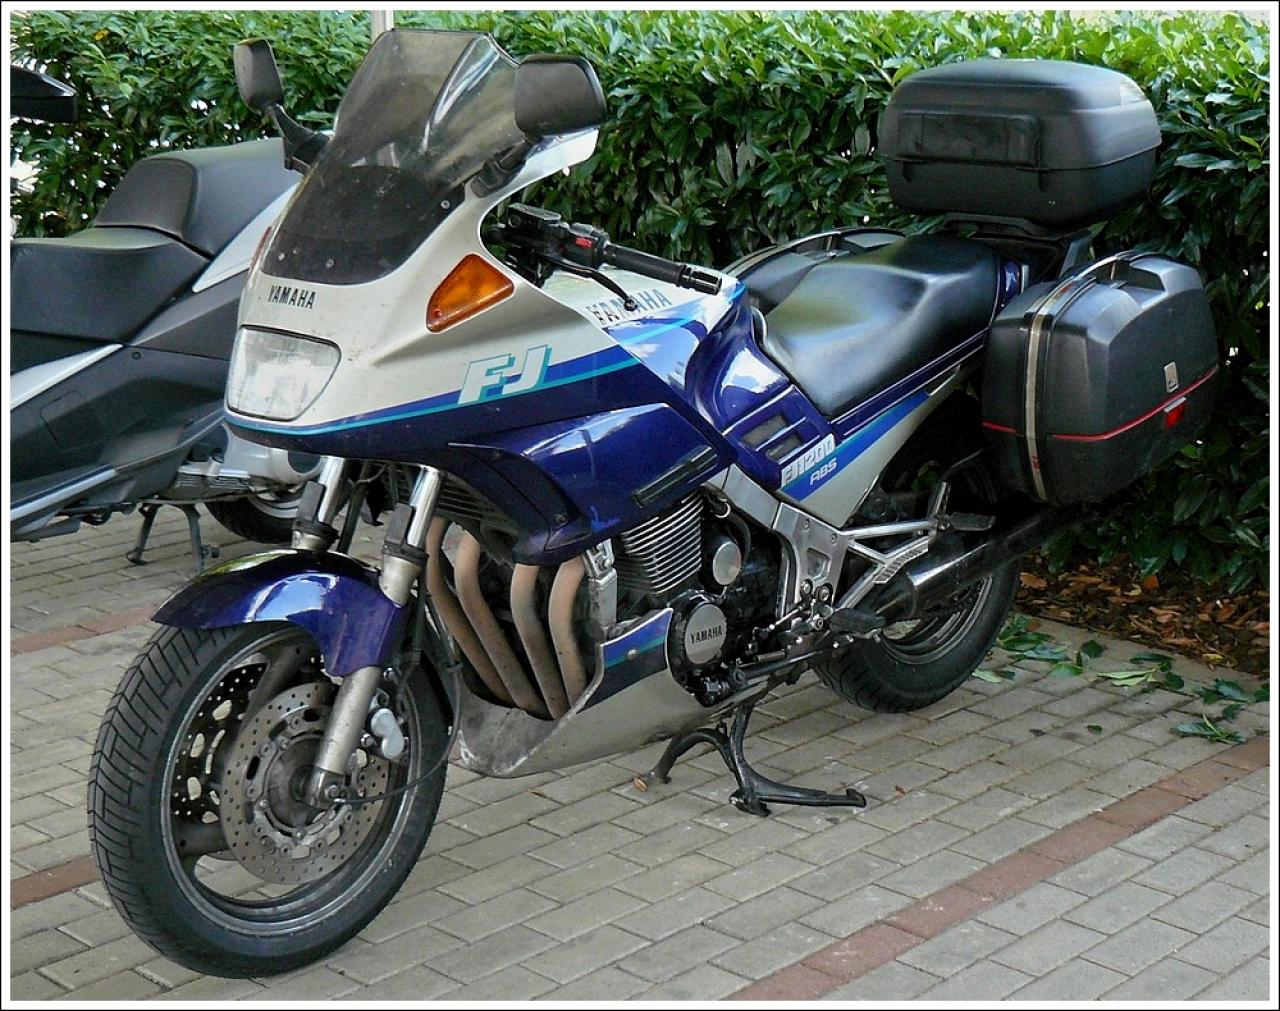 Yamaha FJ 1200 (yamaha fj 1200 1986)